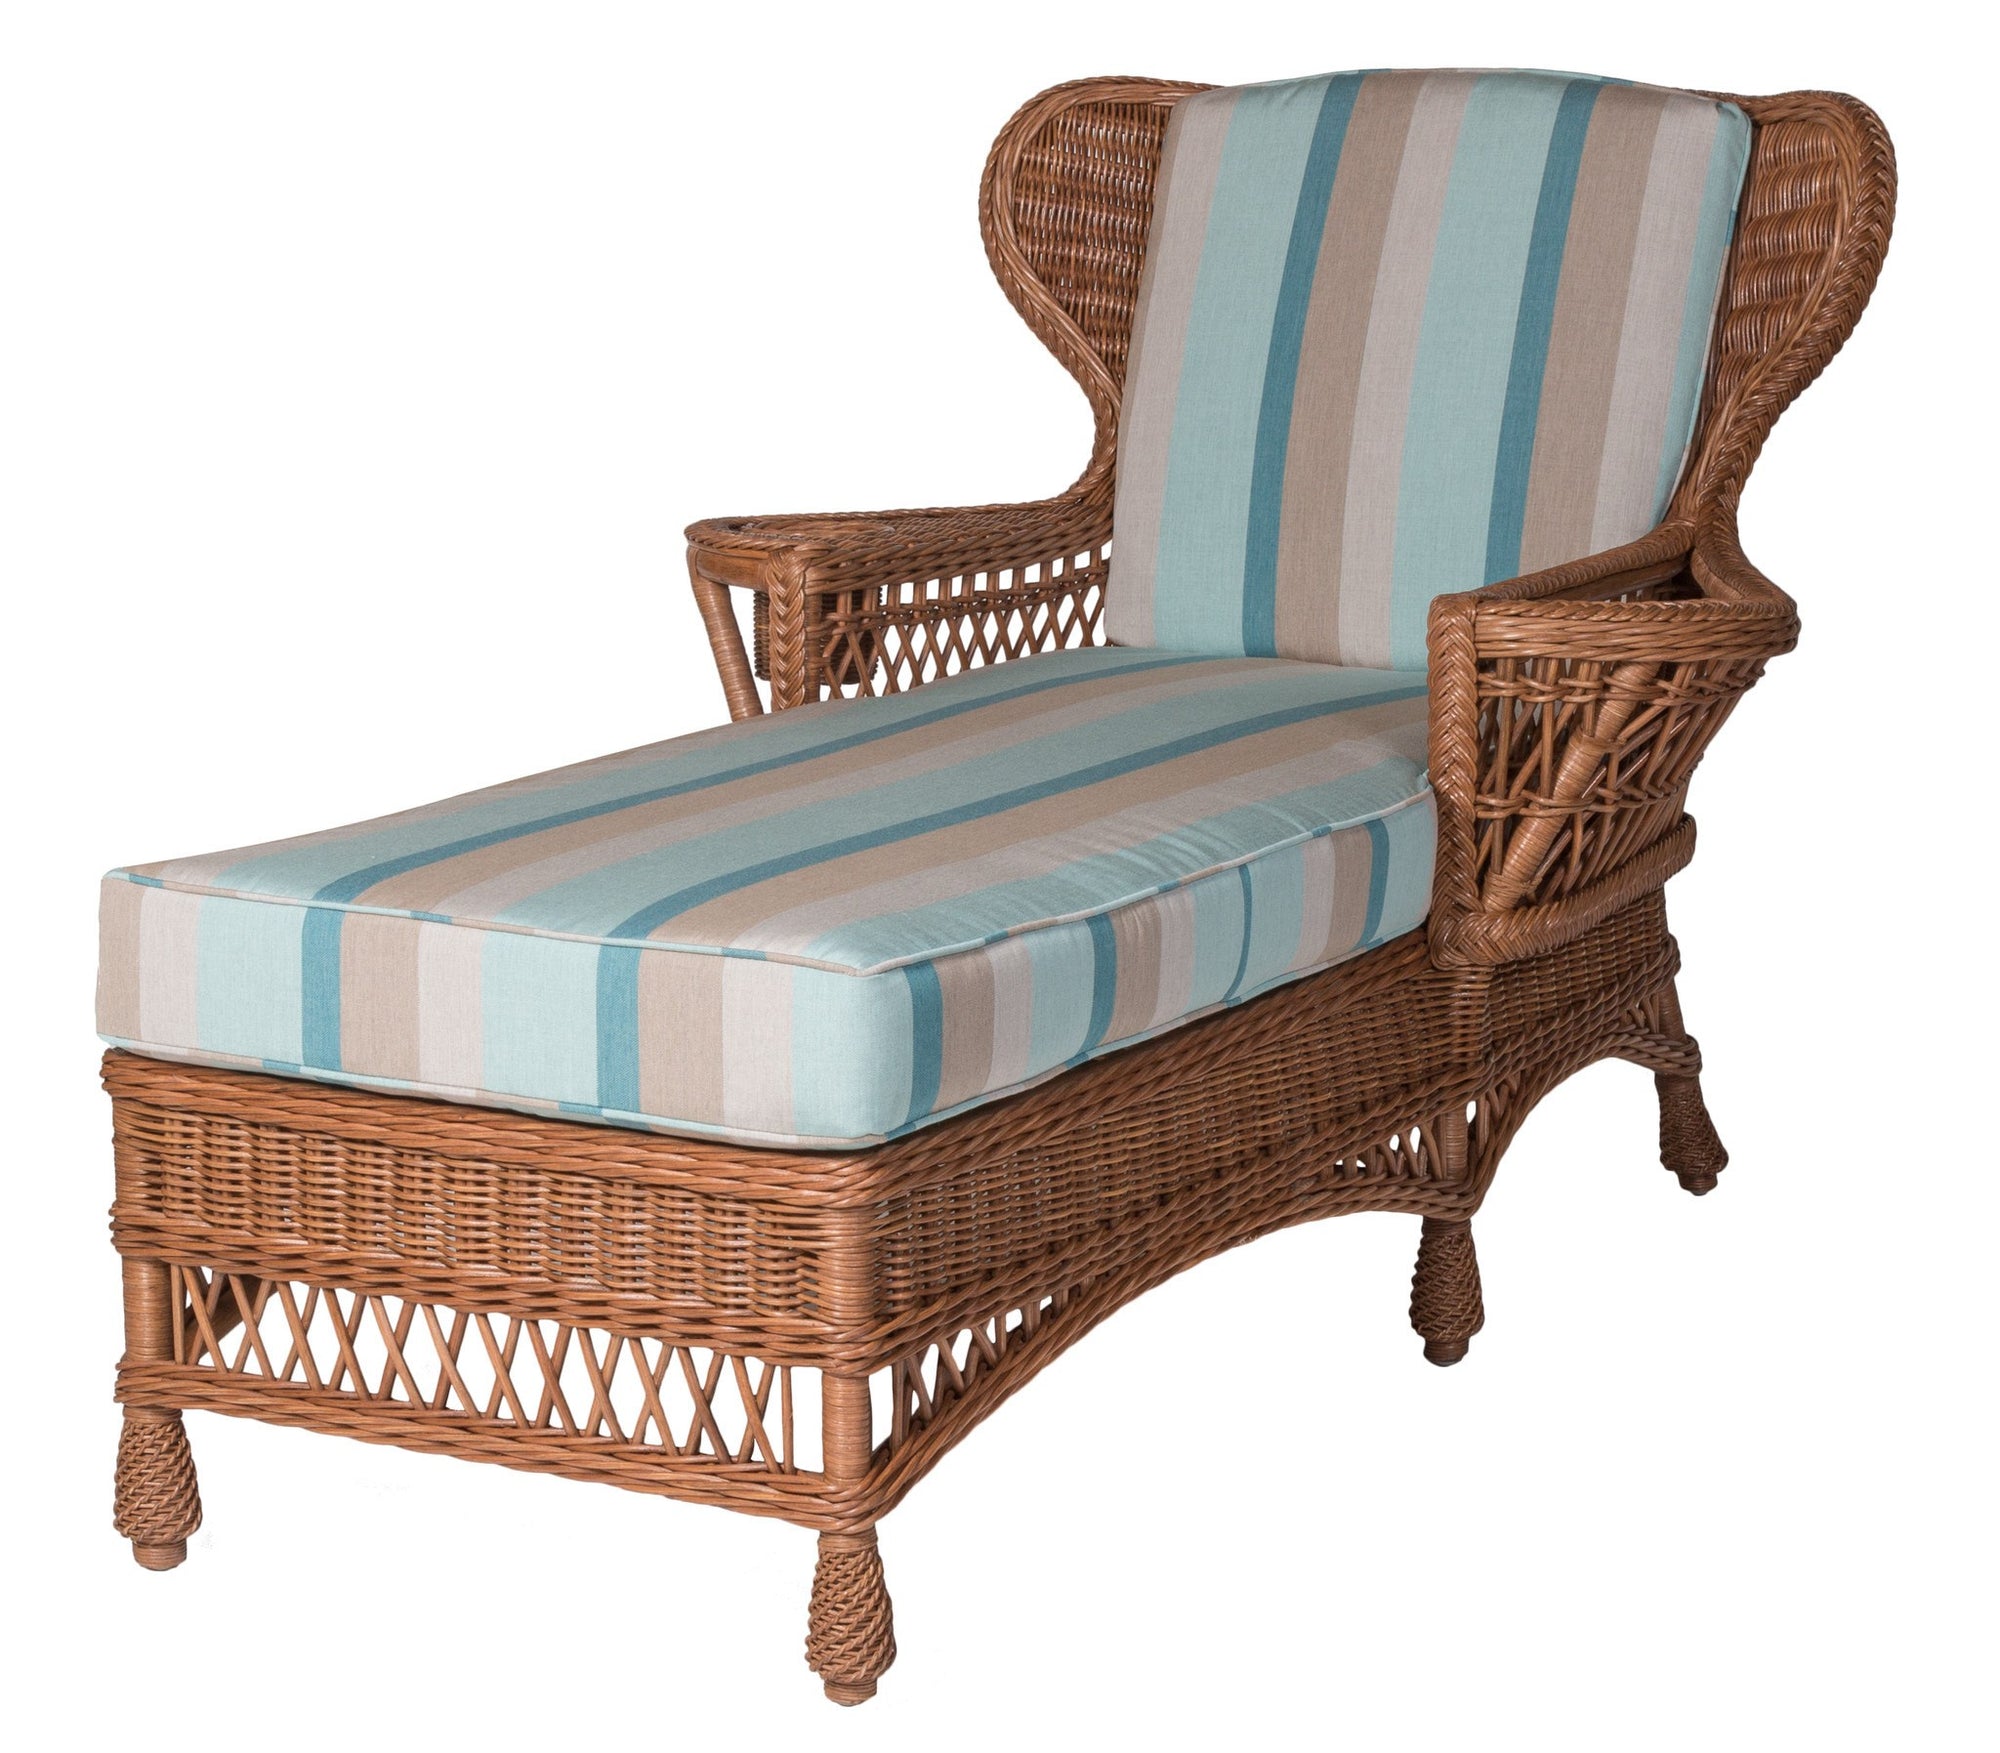 Designer Wicker & Rattan By Tribor Concord Chaise by Designer Wicker from Tribor Lounge Chair - Rattan Imports